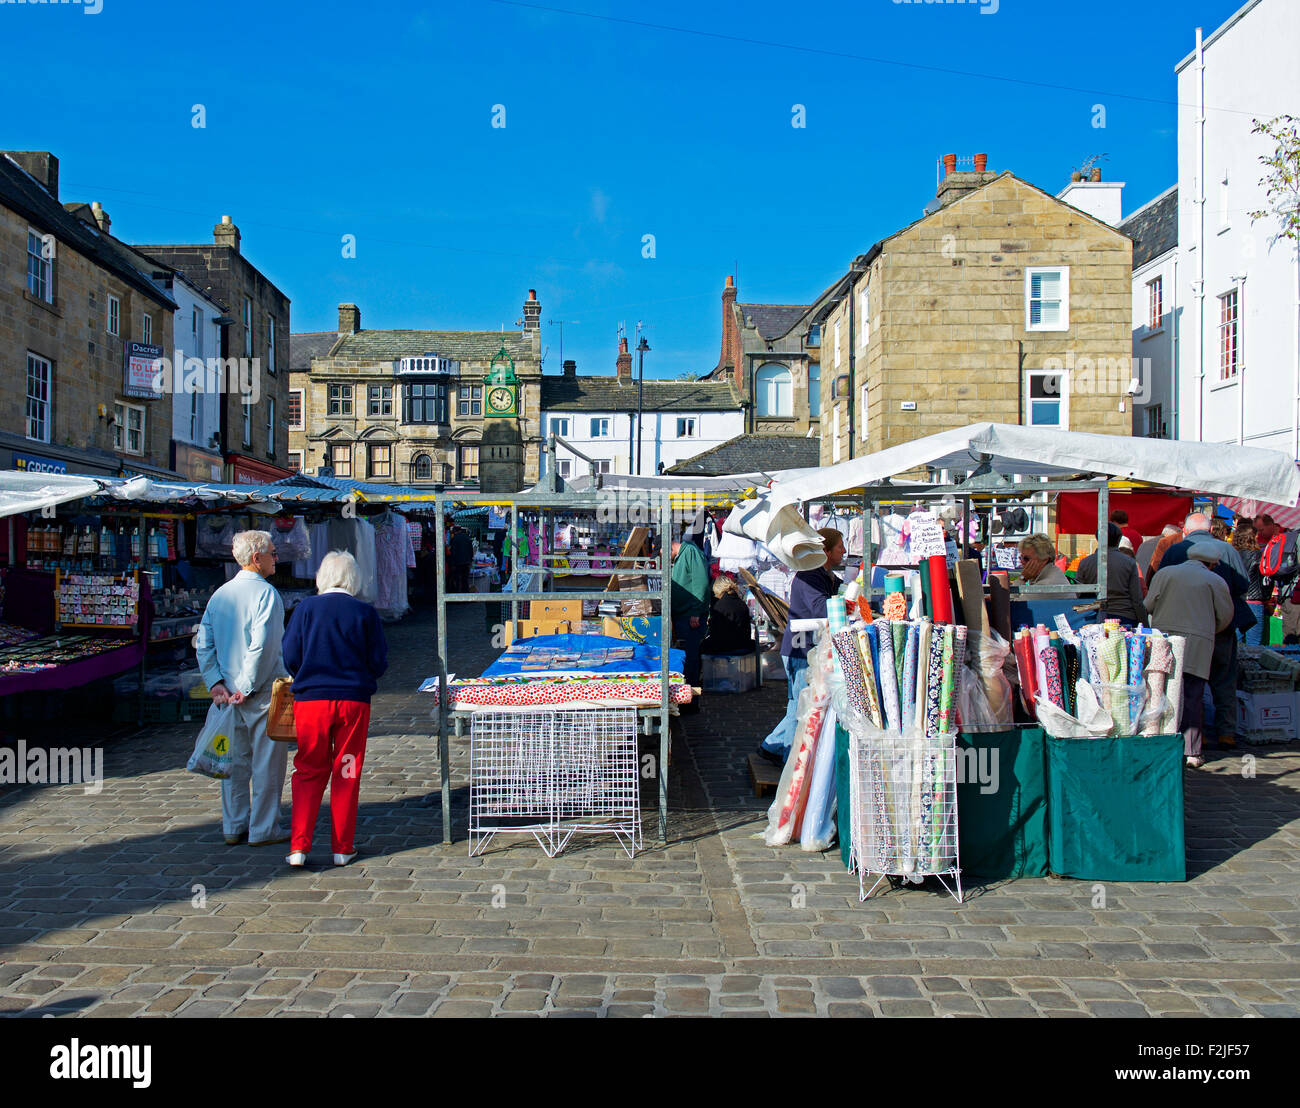 Otley market, West Yorkshire, England UK Stock Photo